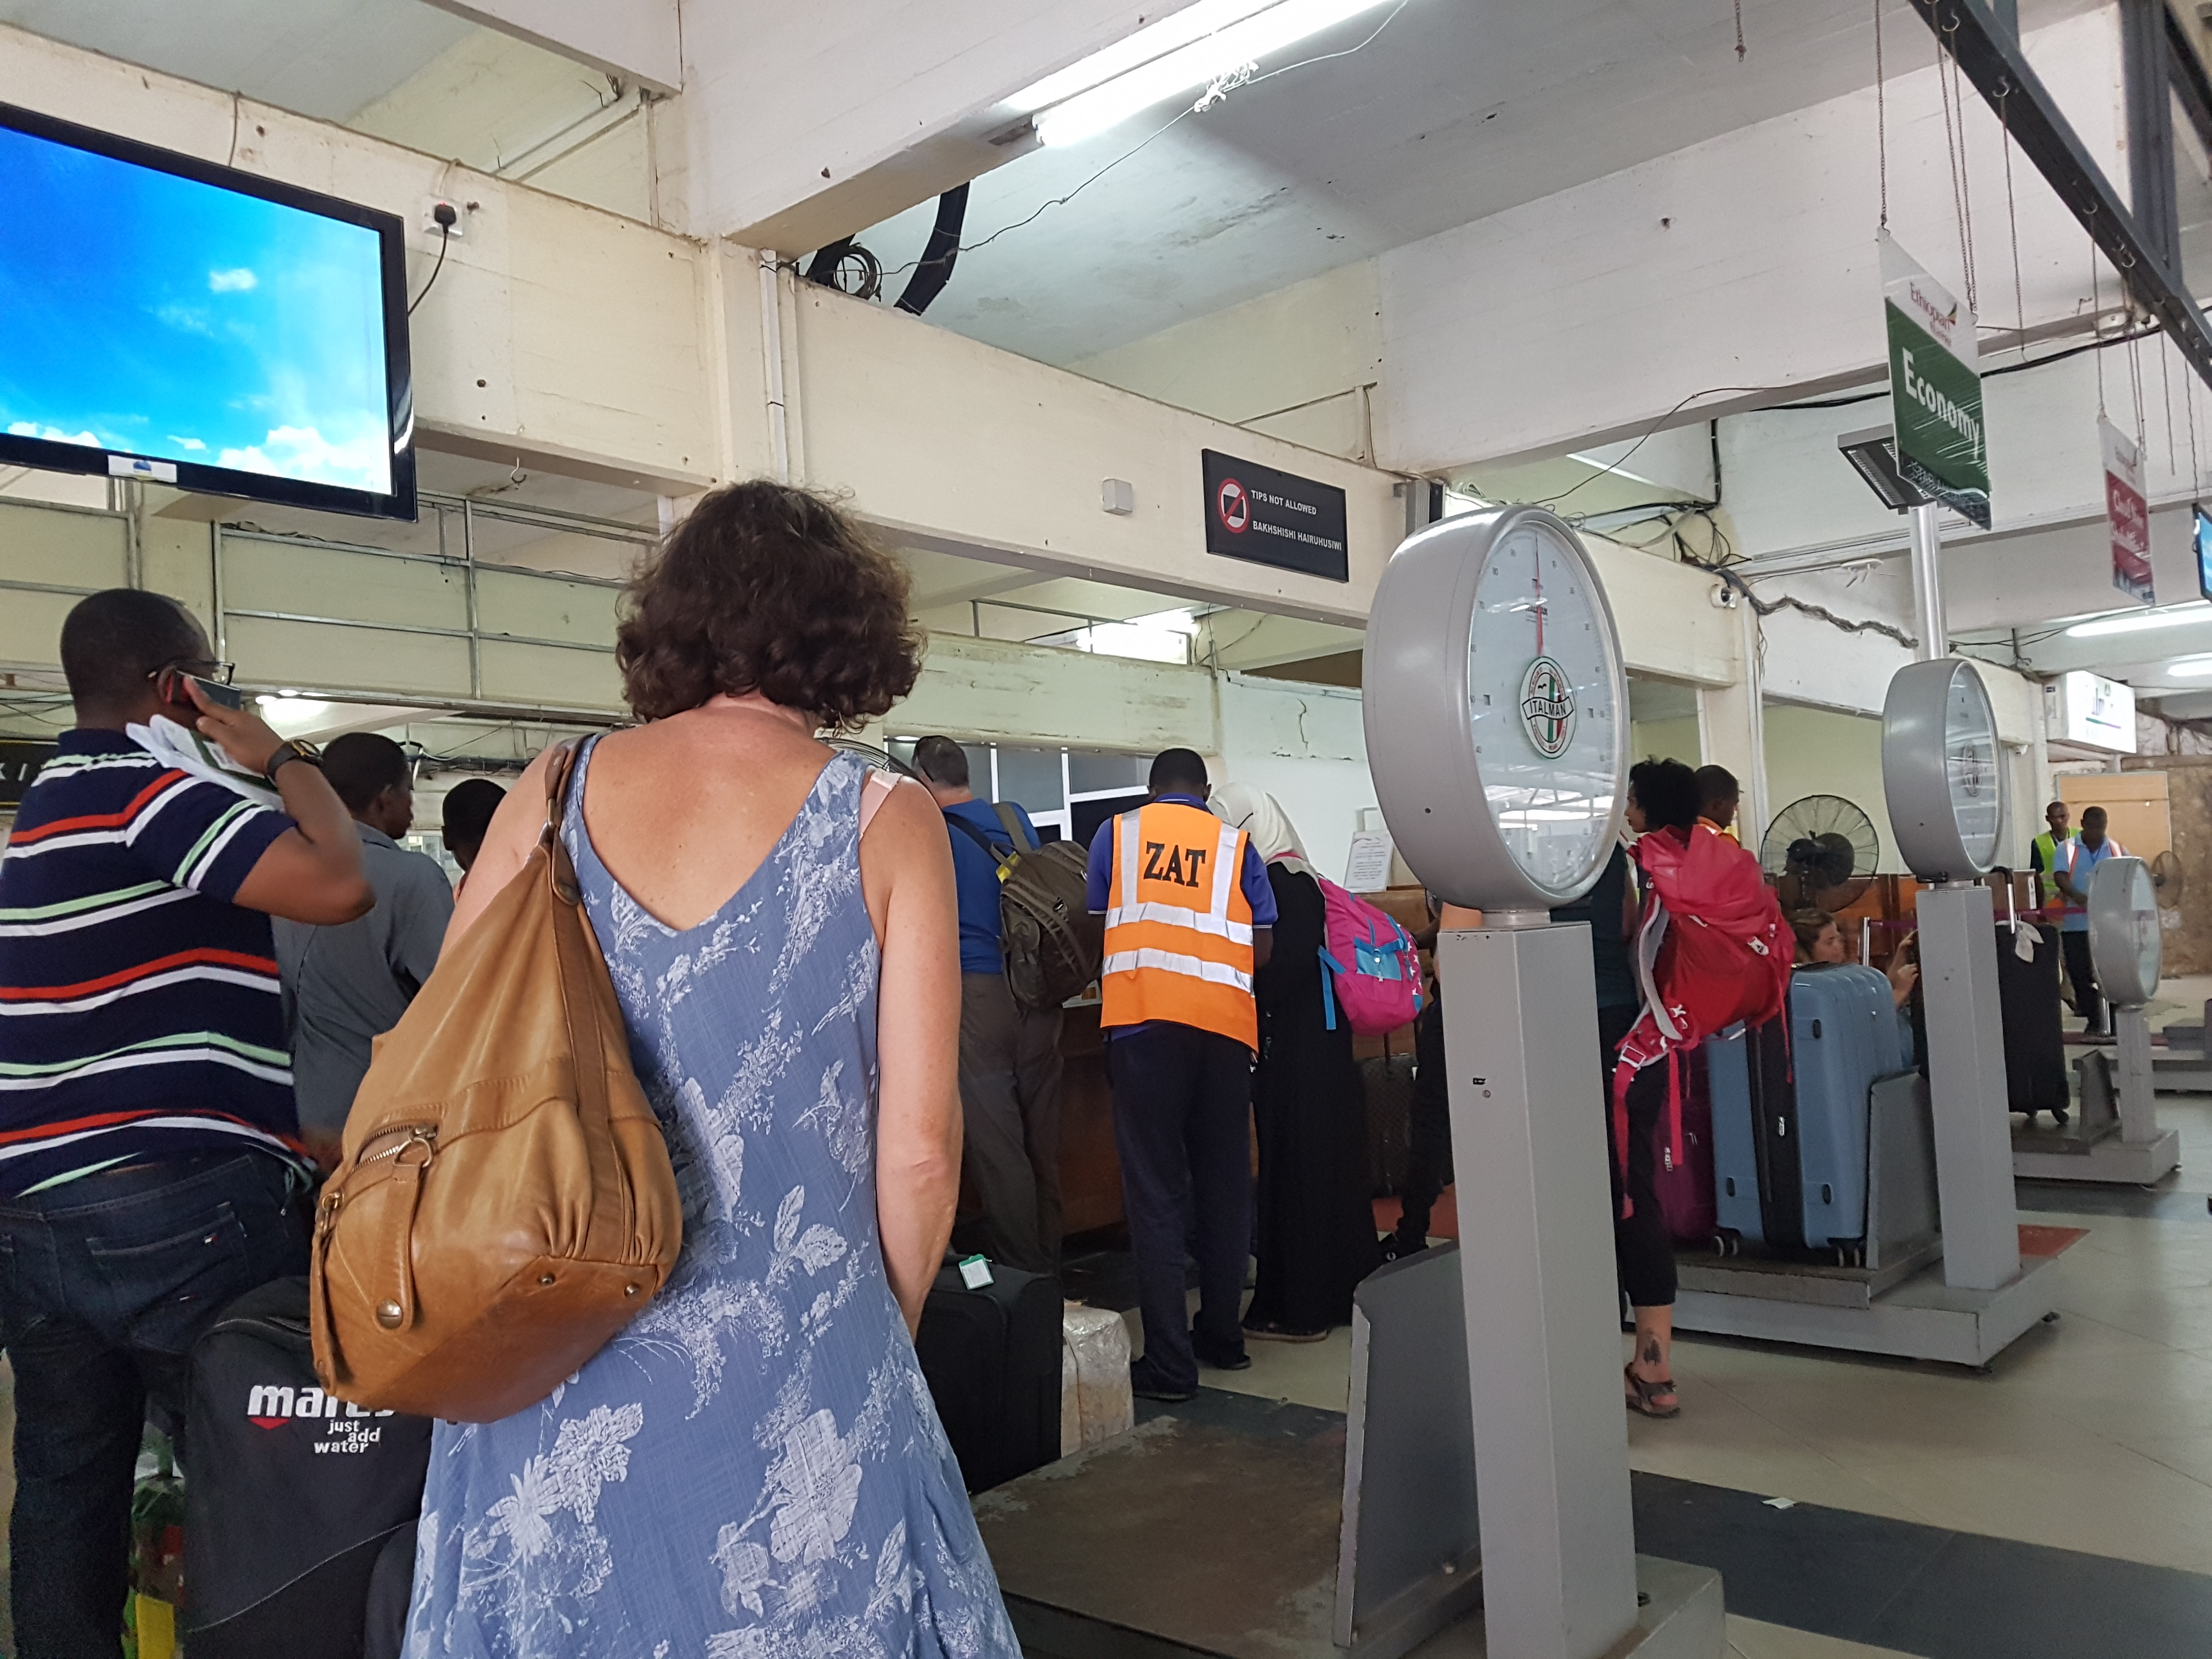 Checking in at Zanzibar airport